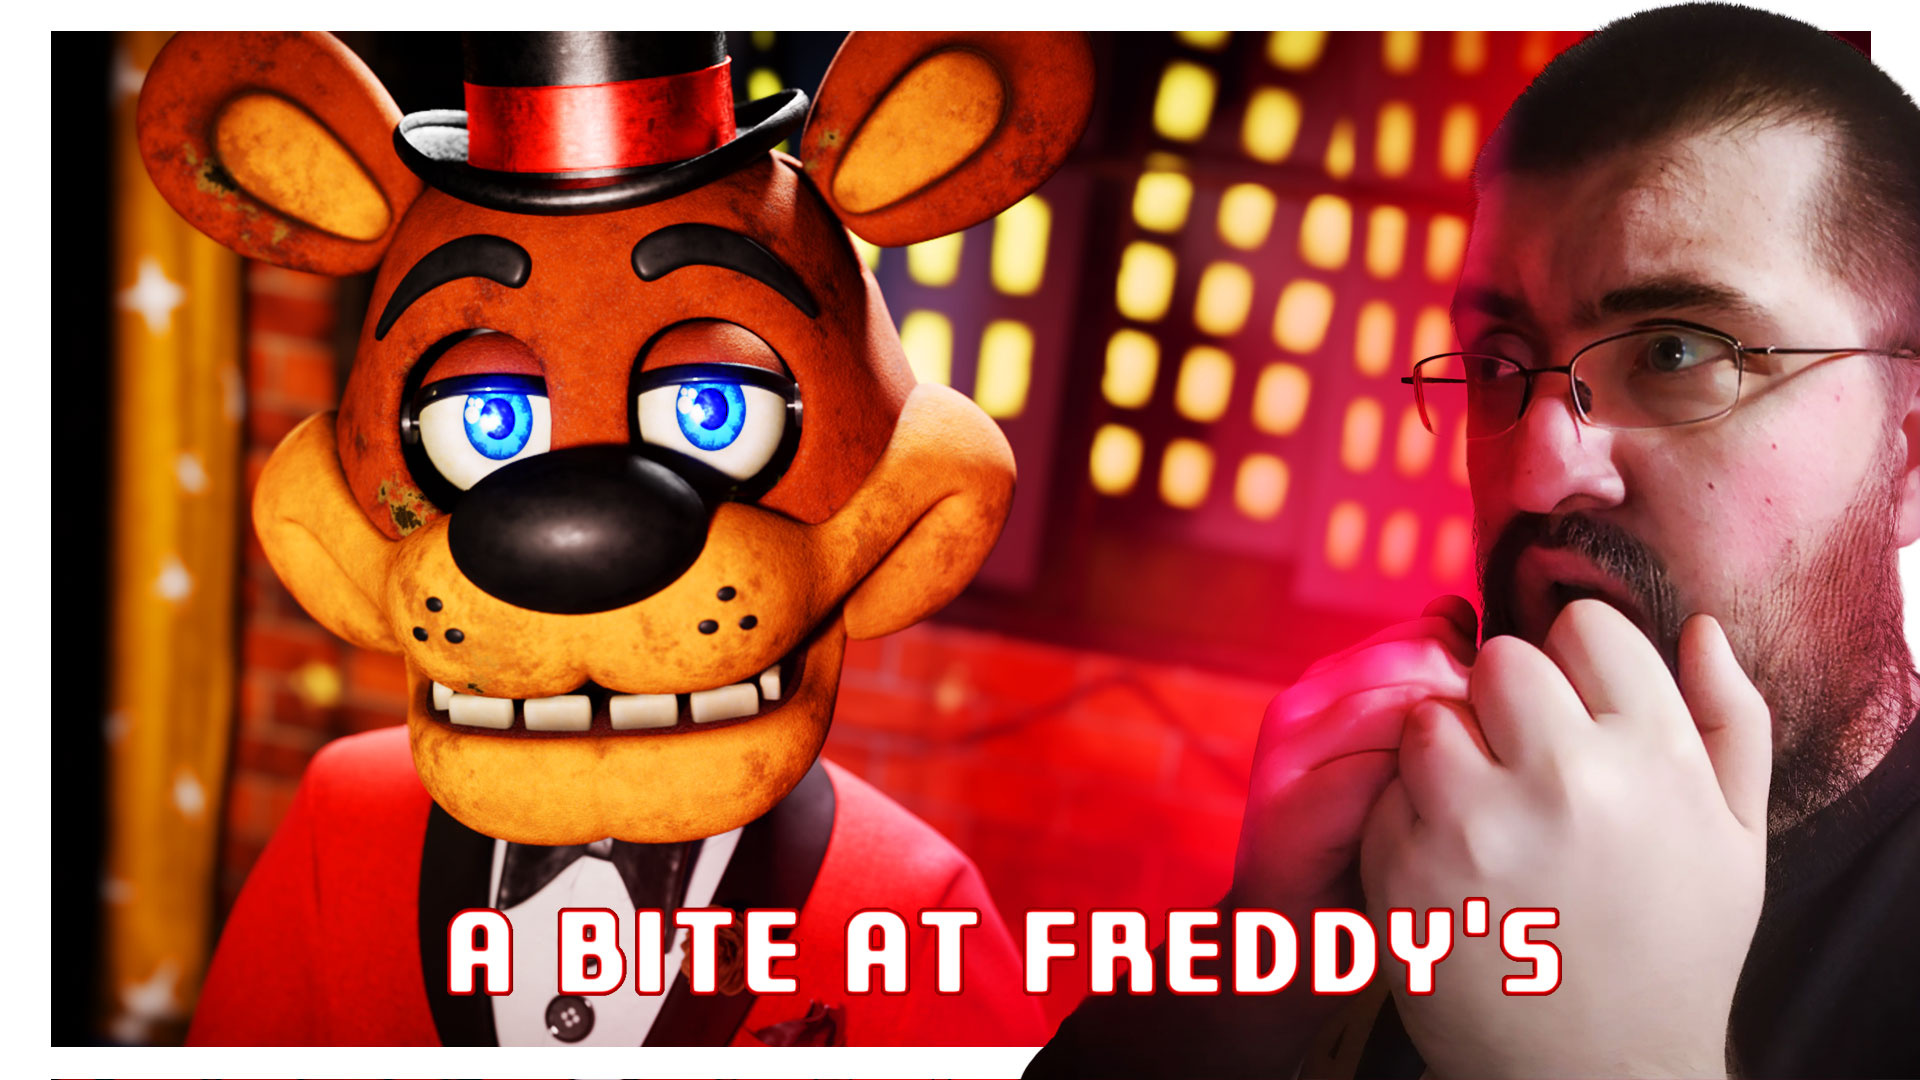 РАБОТАЮ в НОВОМ ФРЕДДИ ФАЗБЕР ГРИЛЕ! FREDDY FAZBEAR'S GRILL - FNAF A Bite at Freddy's